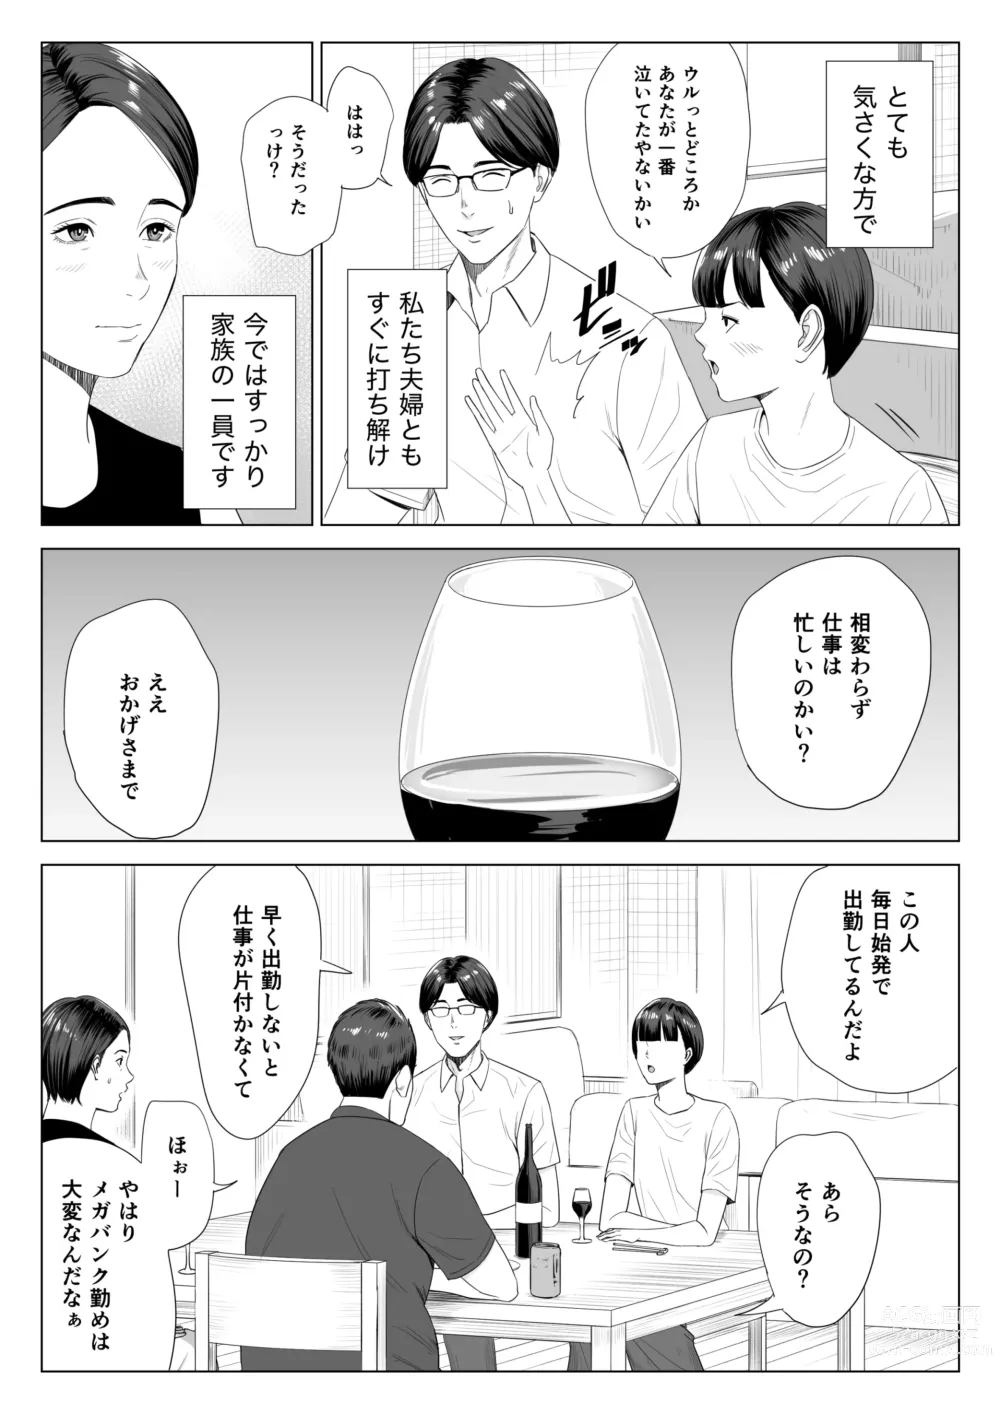 Page 4 of doujinshi Gibo no Tsukaeru Karada.